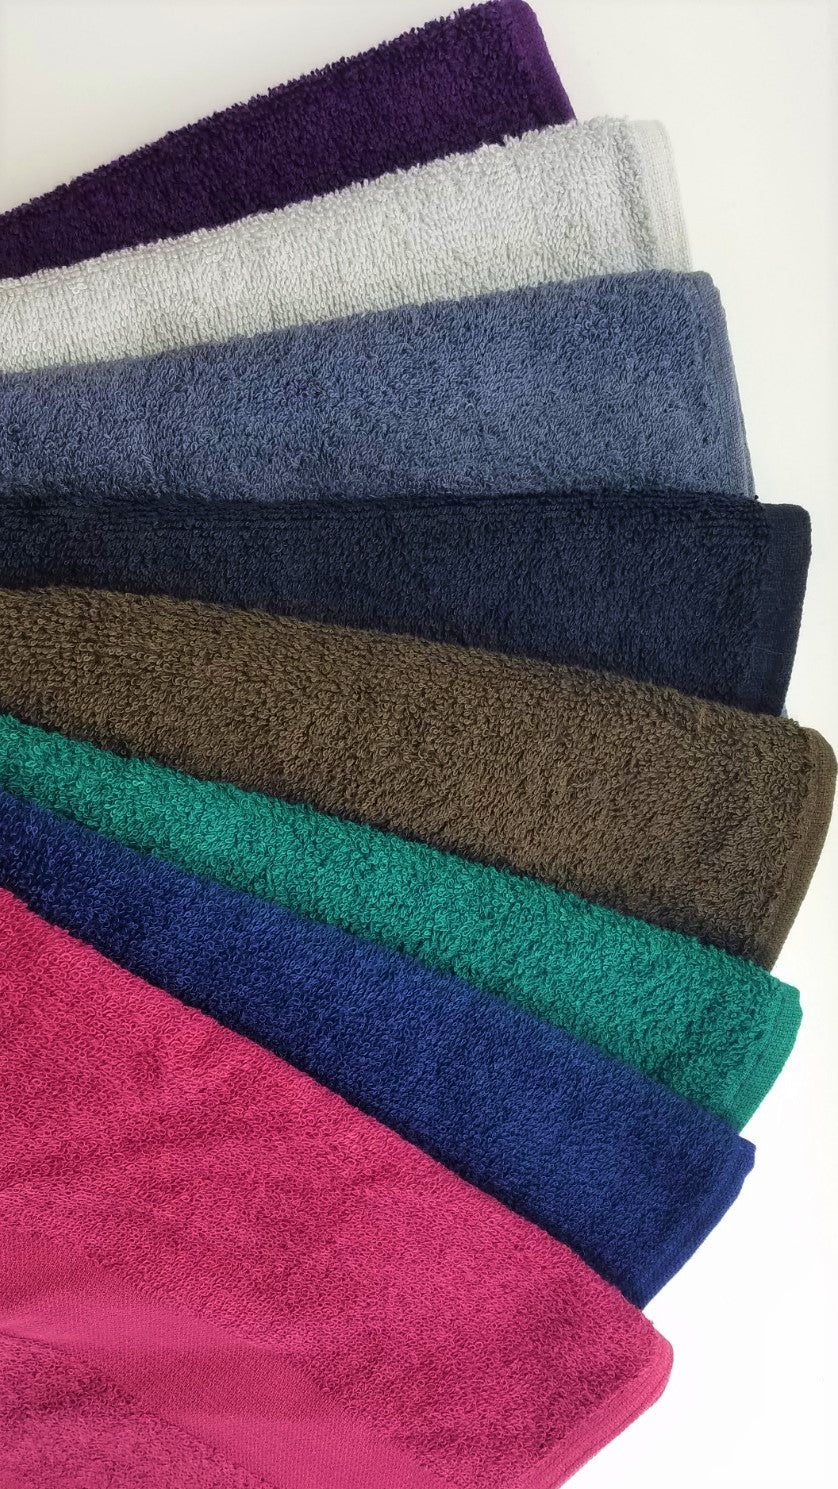 16x27 Navy Hand Towels 100% Cotton - StarTex